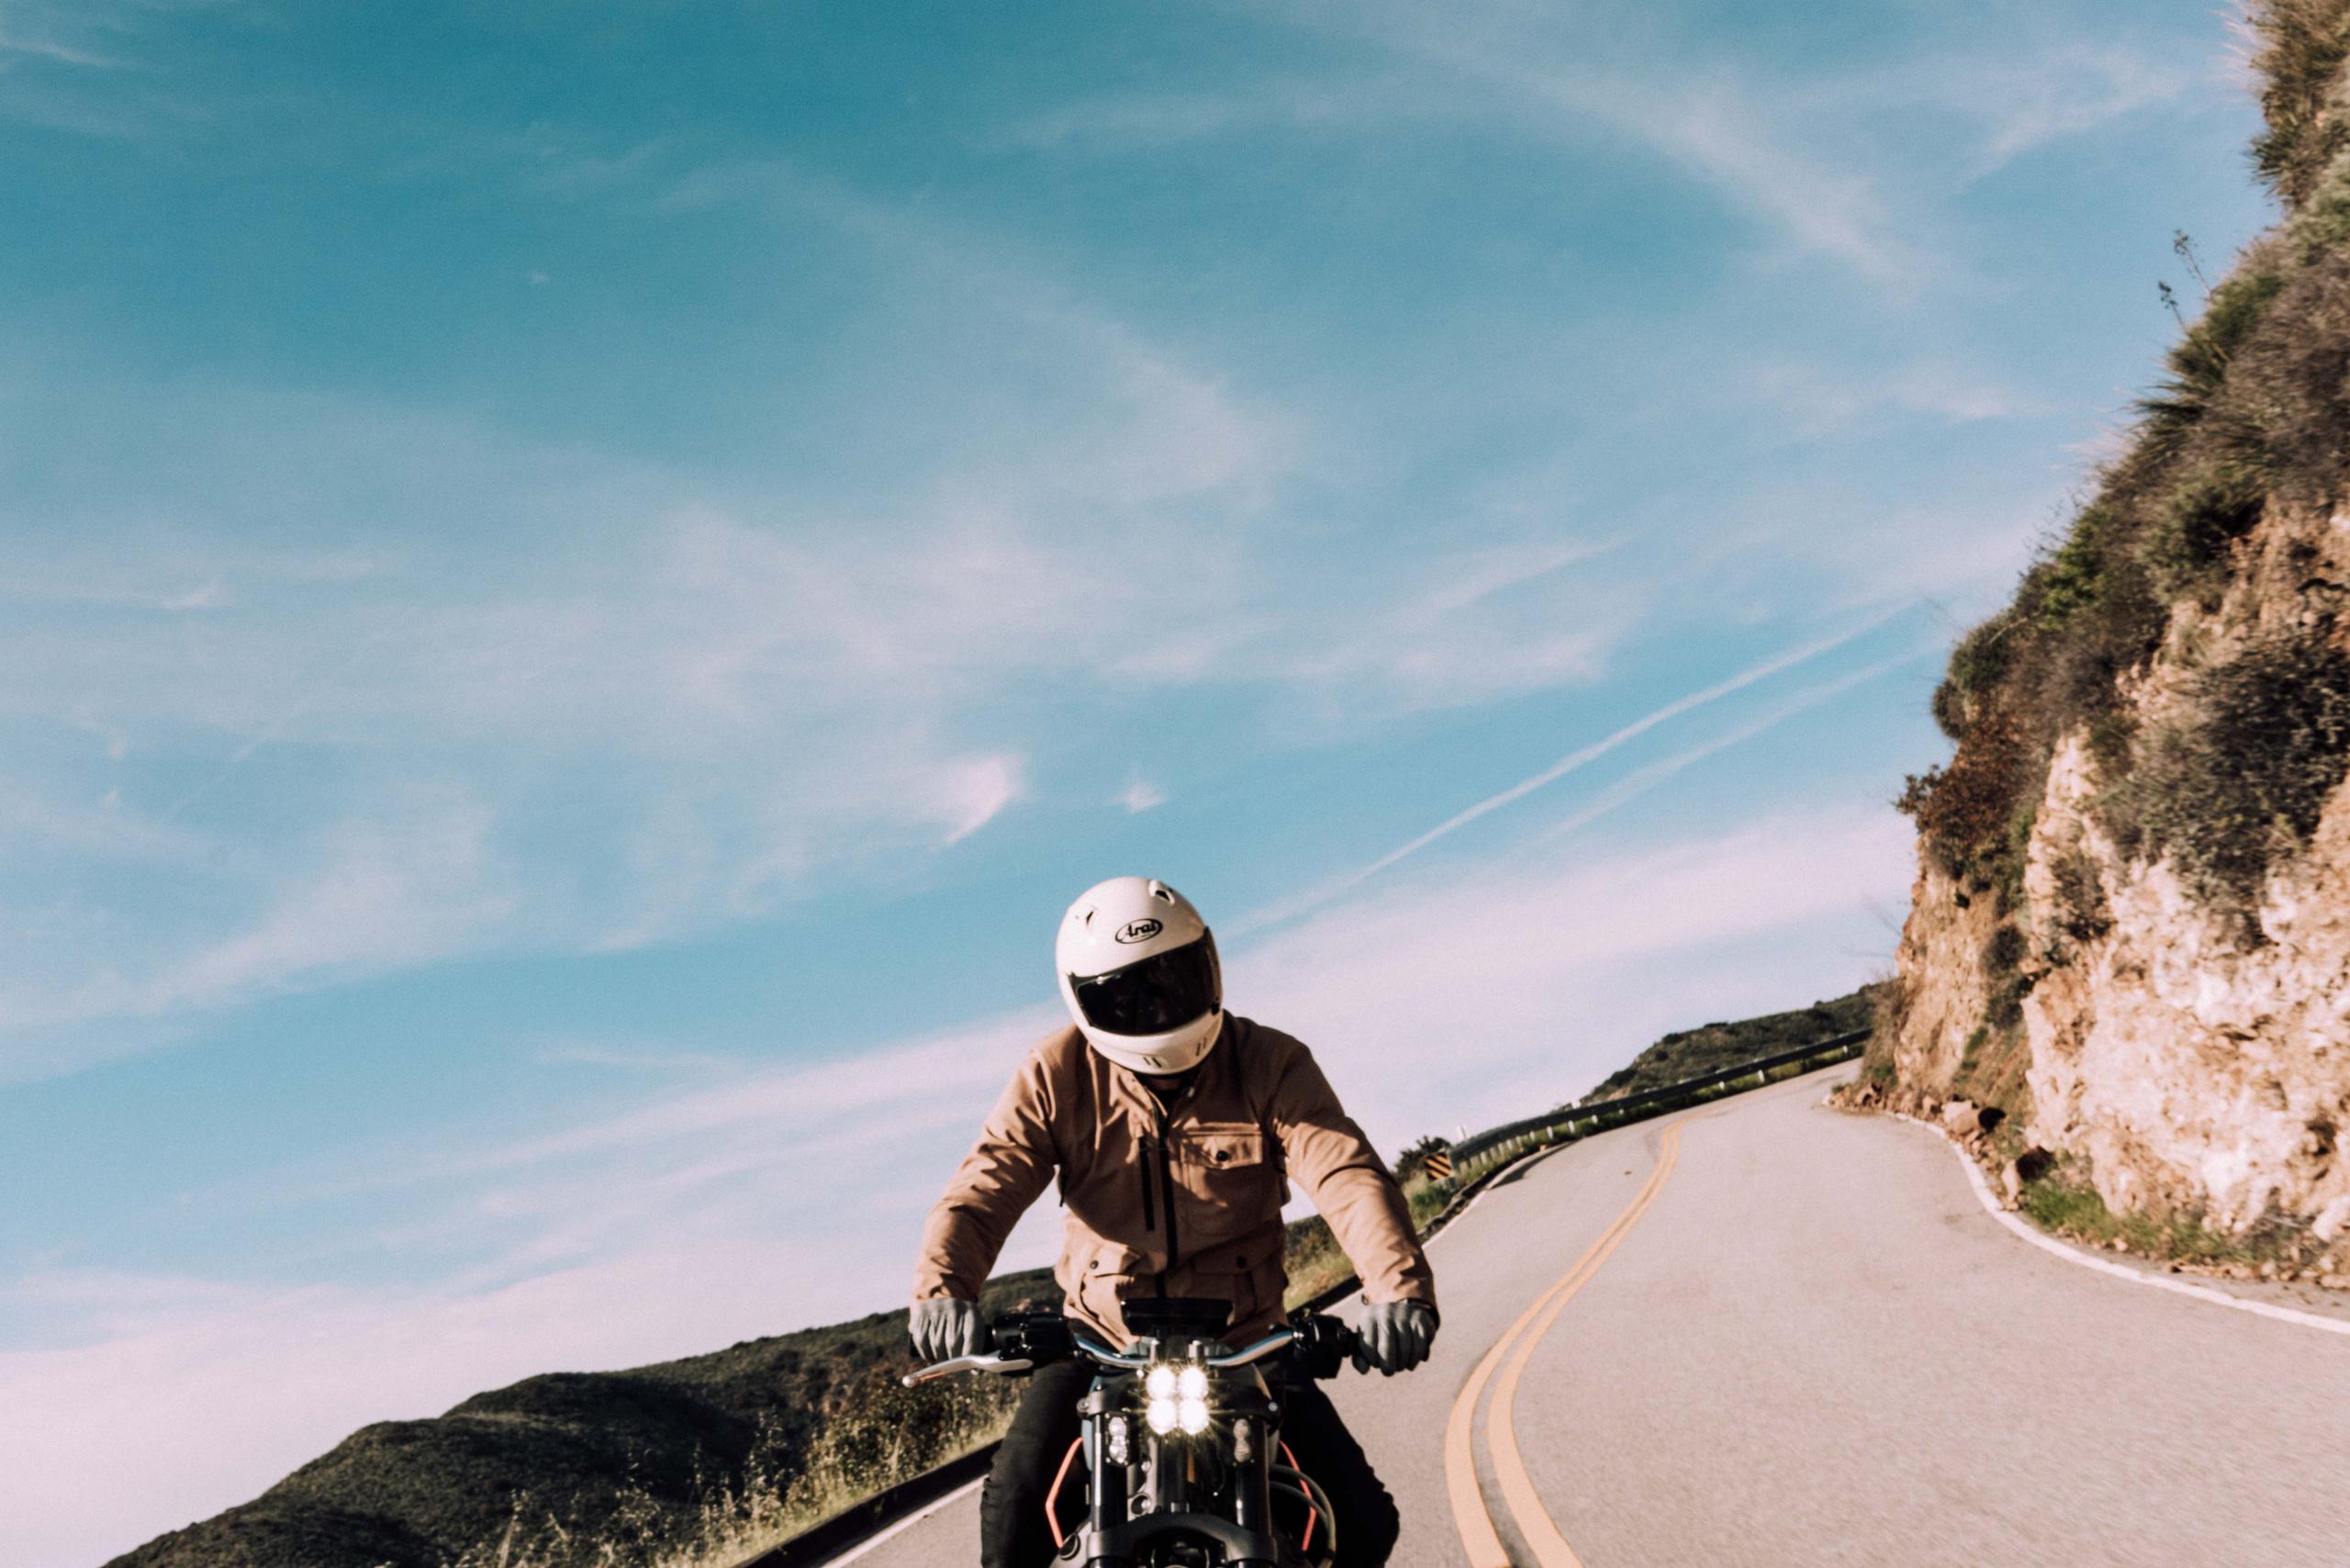 Man riding motorcycle Deer Creek Canyon